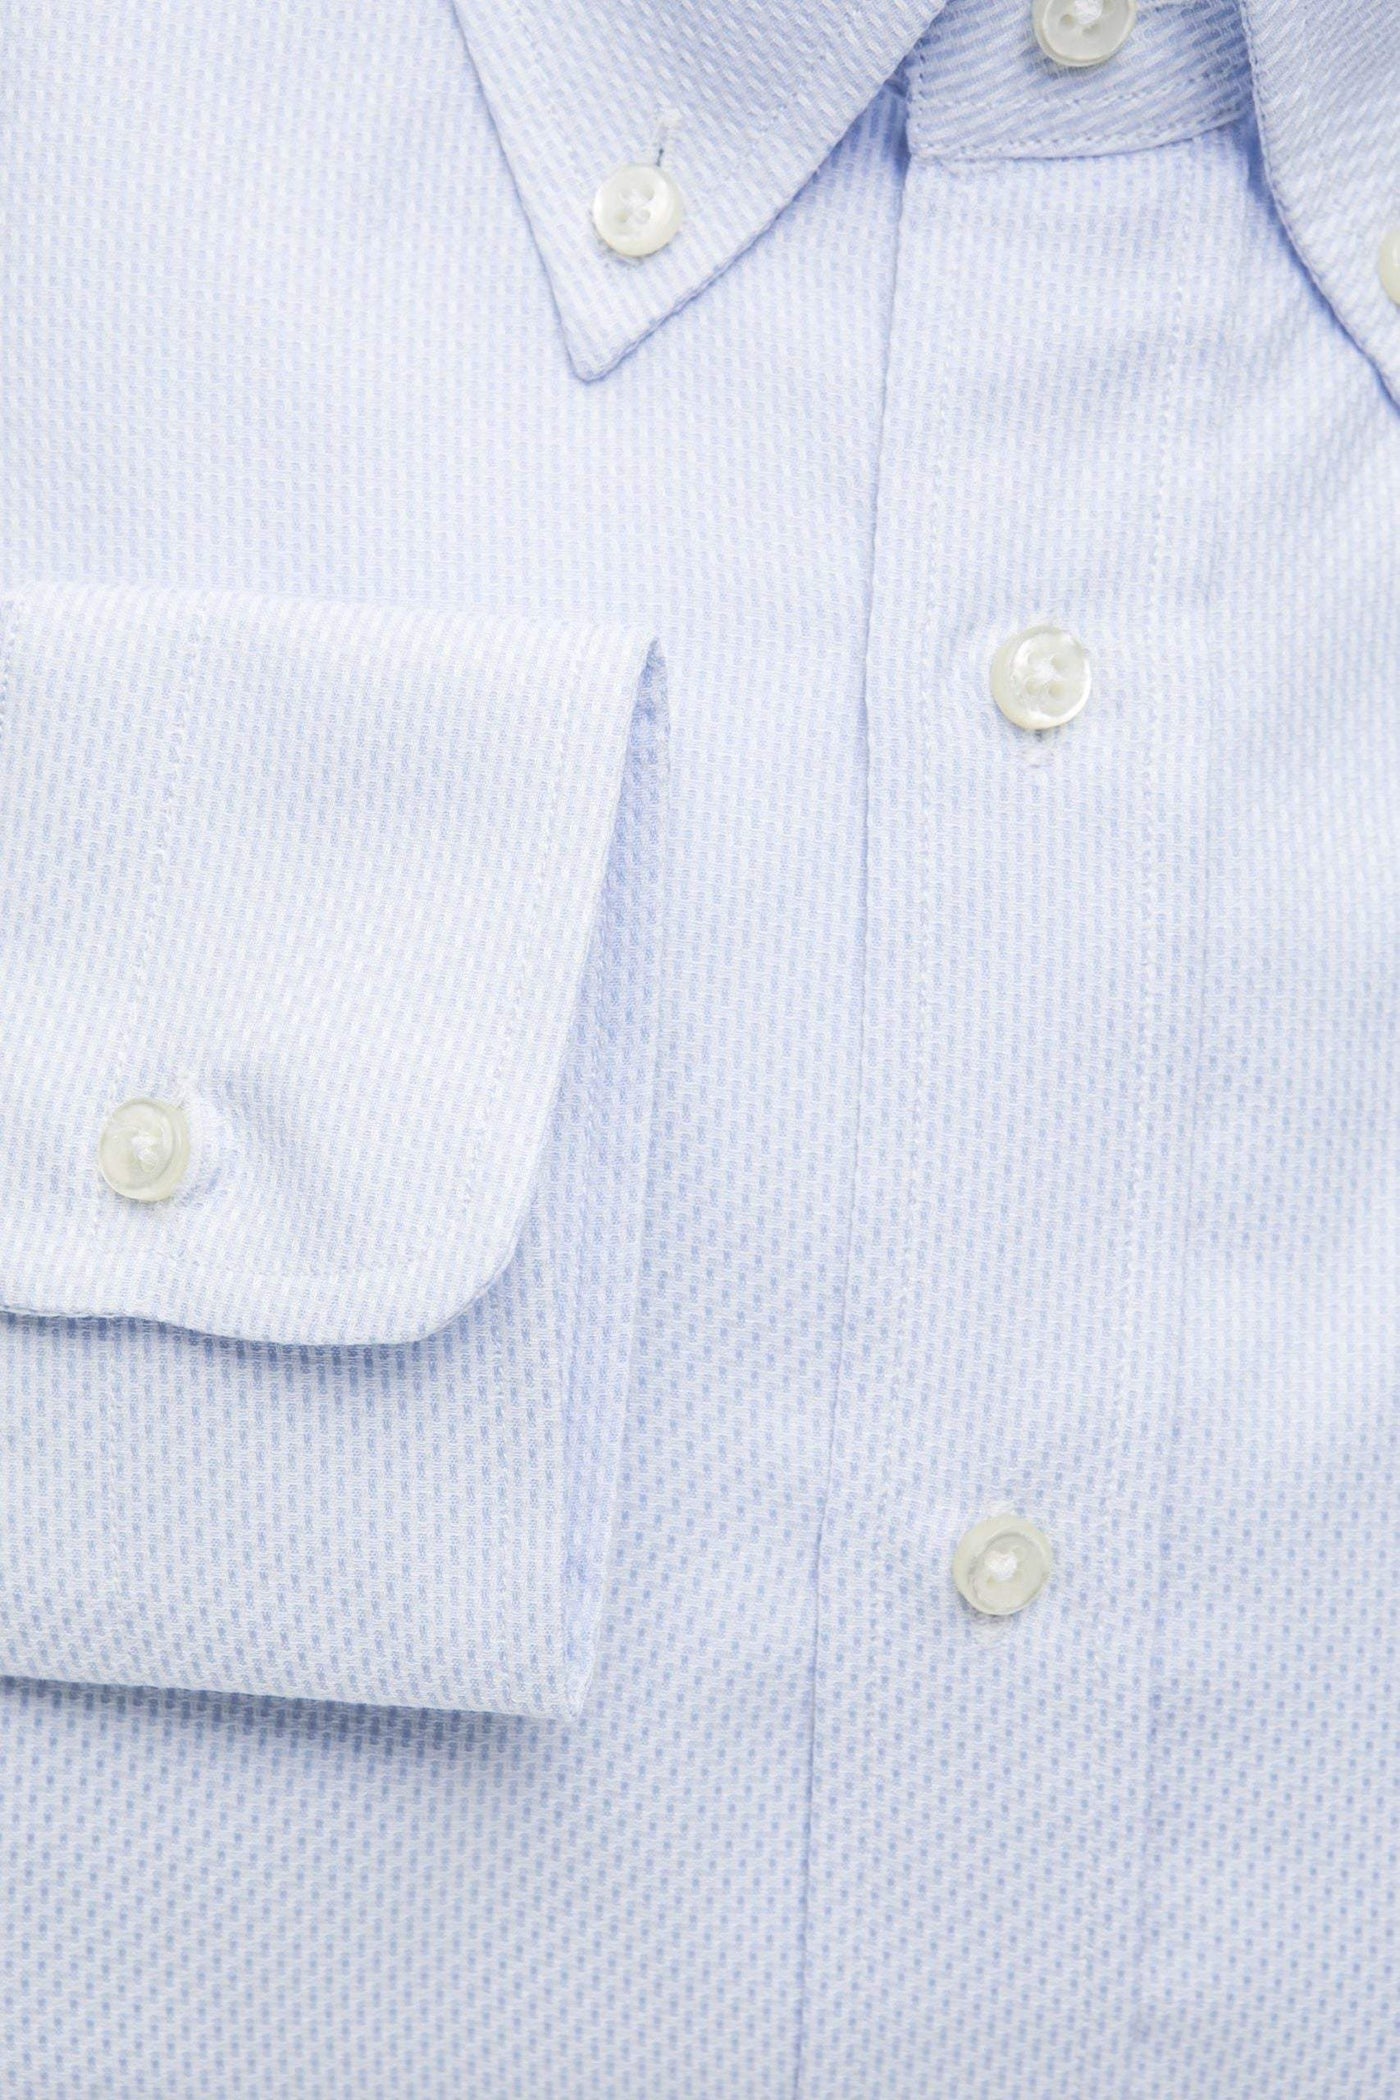 Robert Friedman Light-blue Cotton Shirt #men, feed-1, IT39 | S, IT40 | M, IT41 | L, IT42 | XL, IT43 | 2XL, IT44 | 3XL, Light-blue, Robert Friedman, Shirts - Men - Clothing at SEYMAYKA